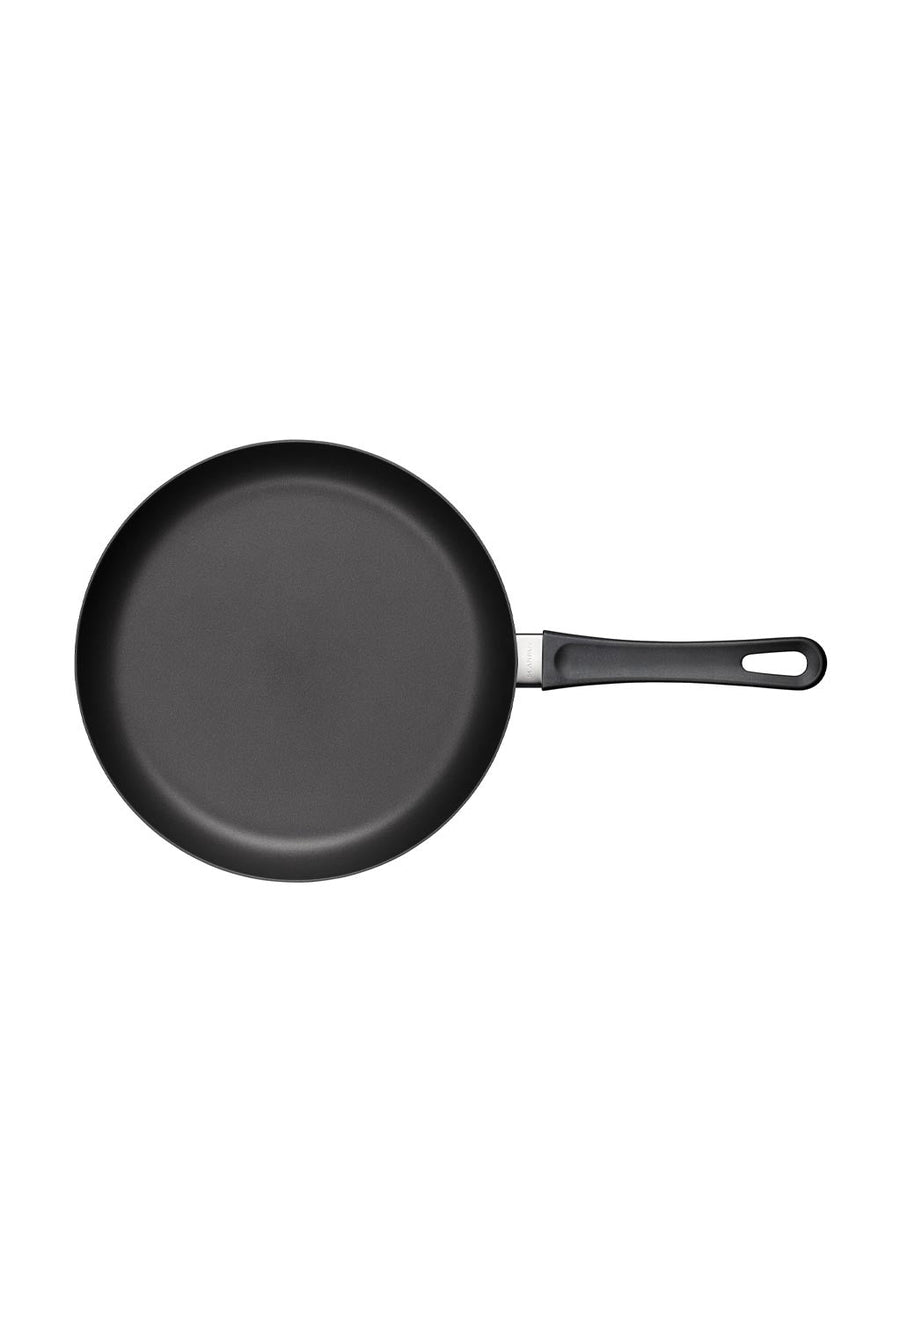 Scanpan Classic Induction Frying Pan